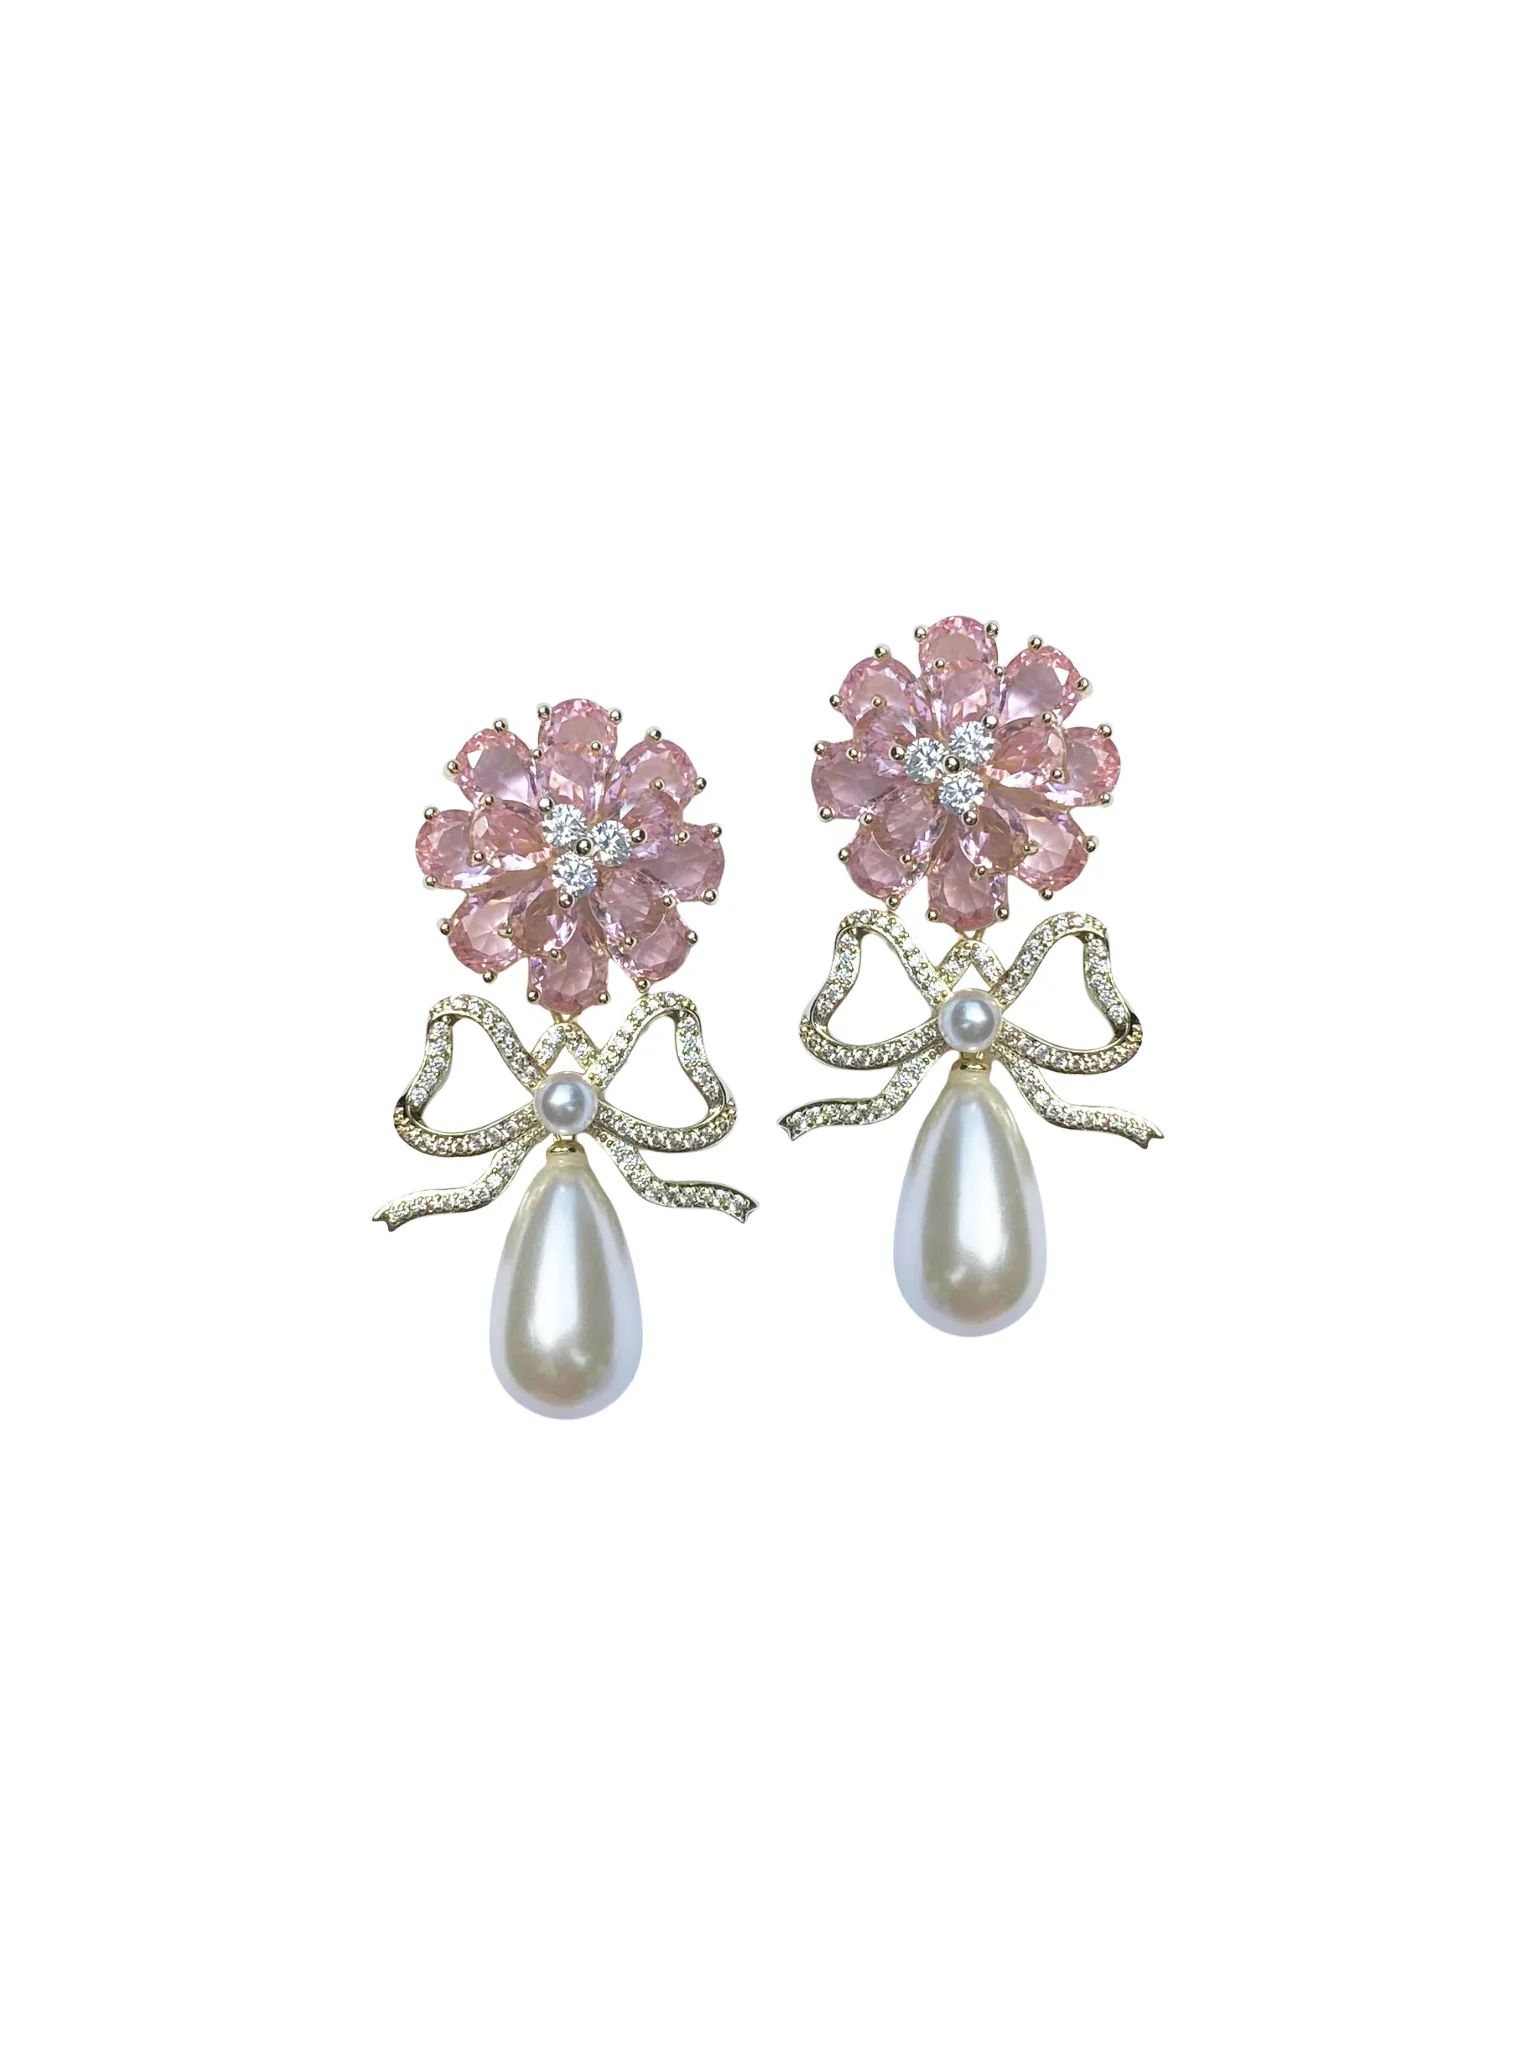 Leslie Earrings | Nicola Bathie Jewelry